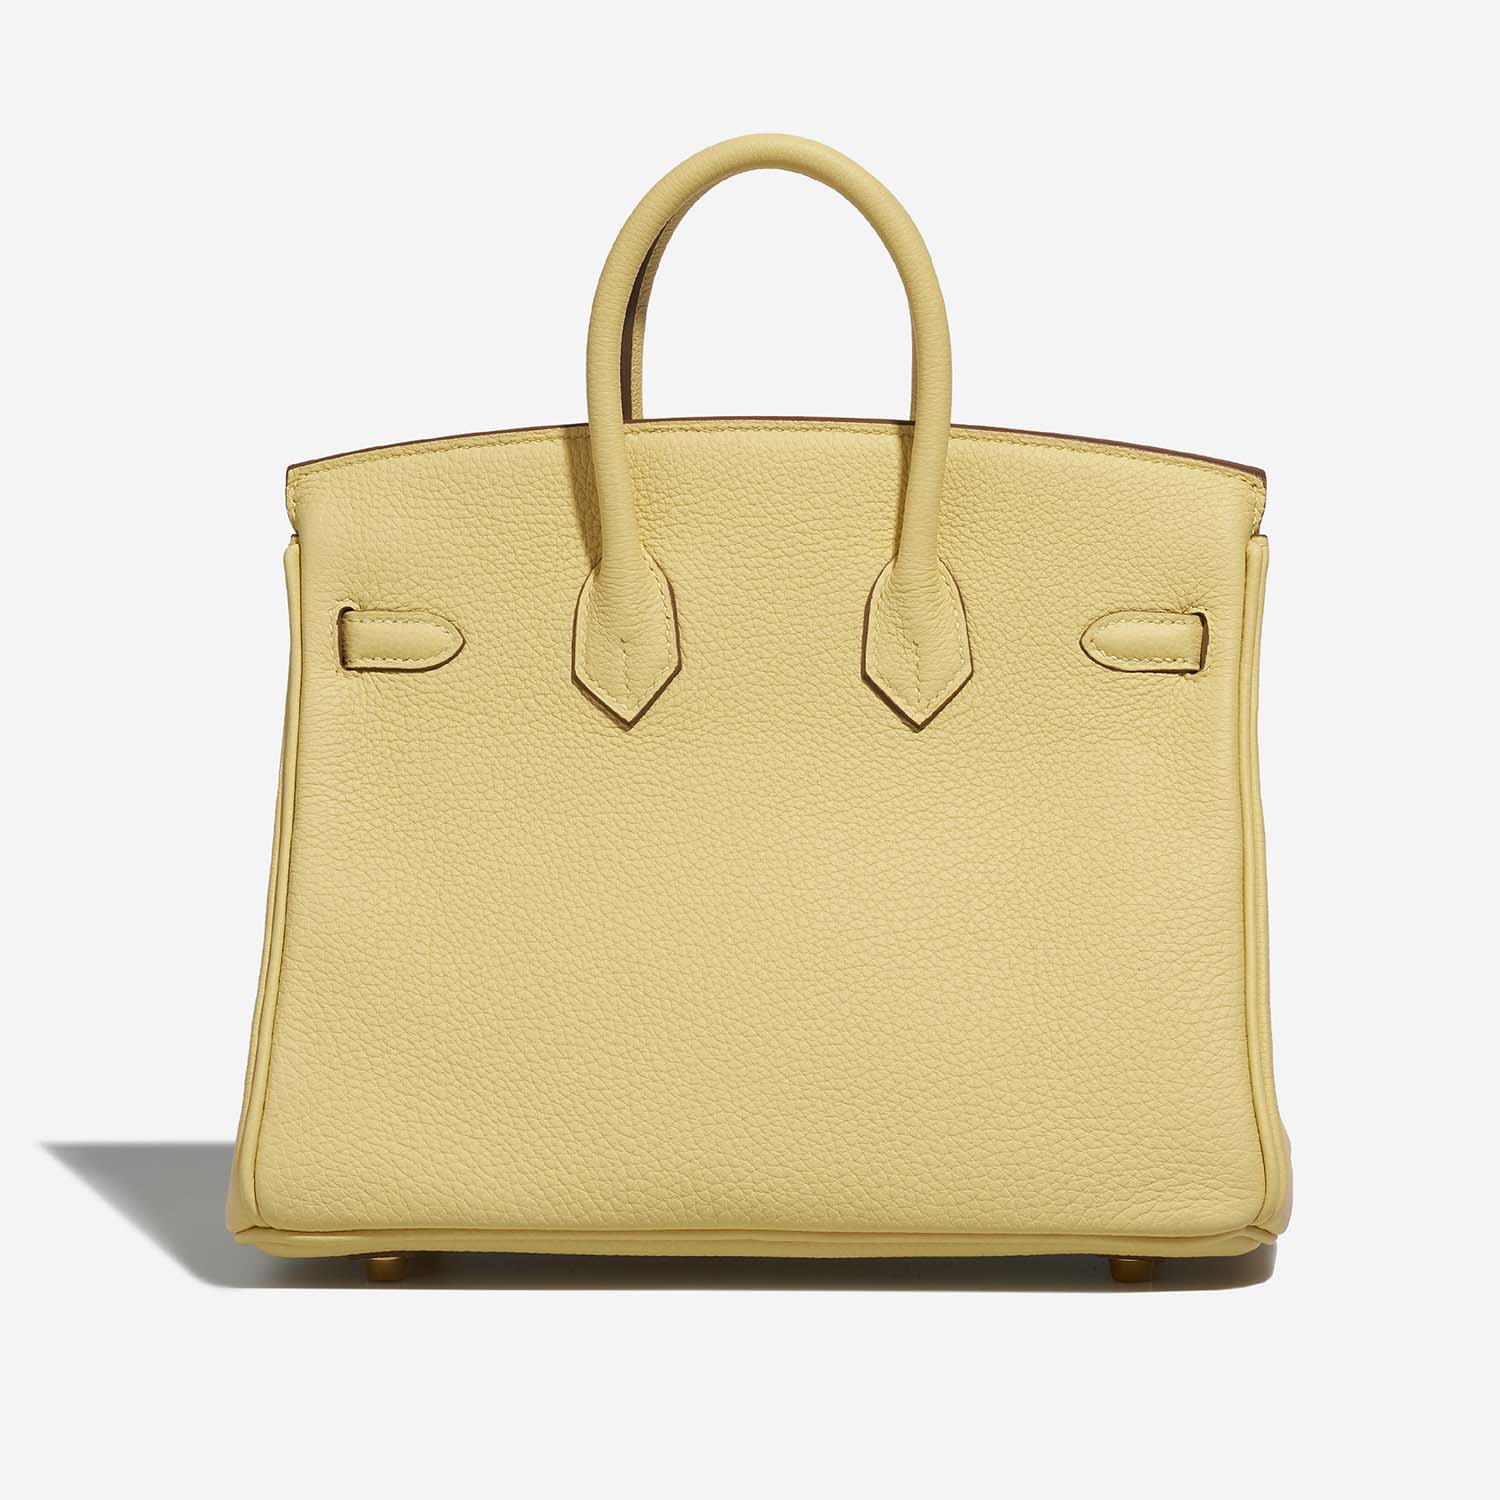 Hermès Birkin 25 JaunePoussin 5B S | Verkaufen Sie Ihre Designertasche auf Saclab.com